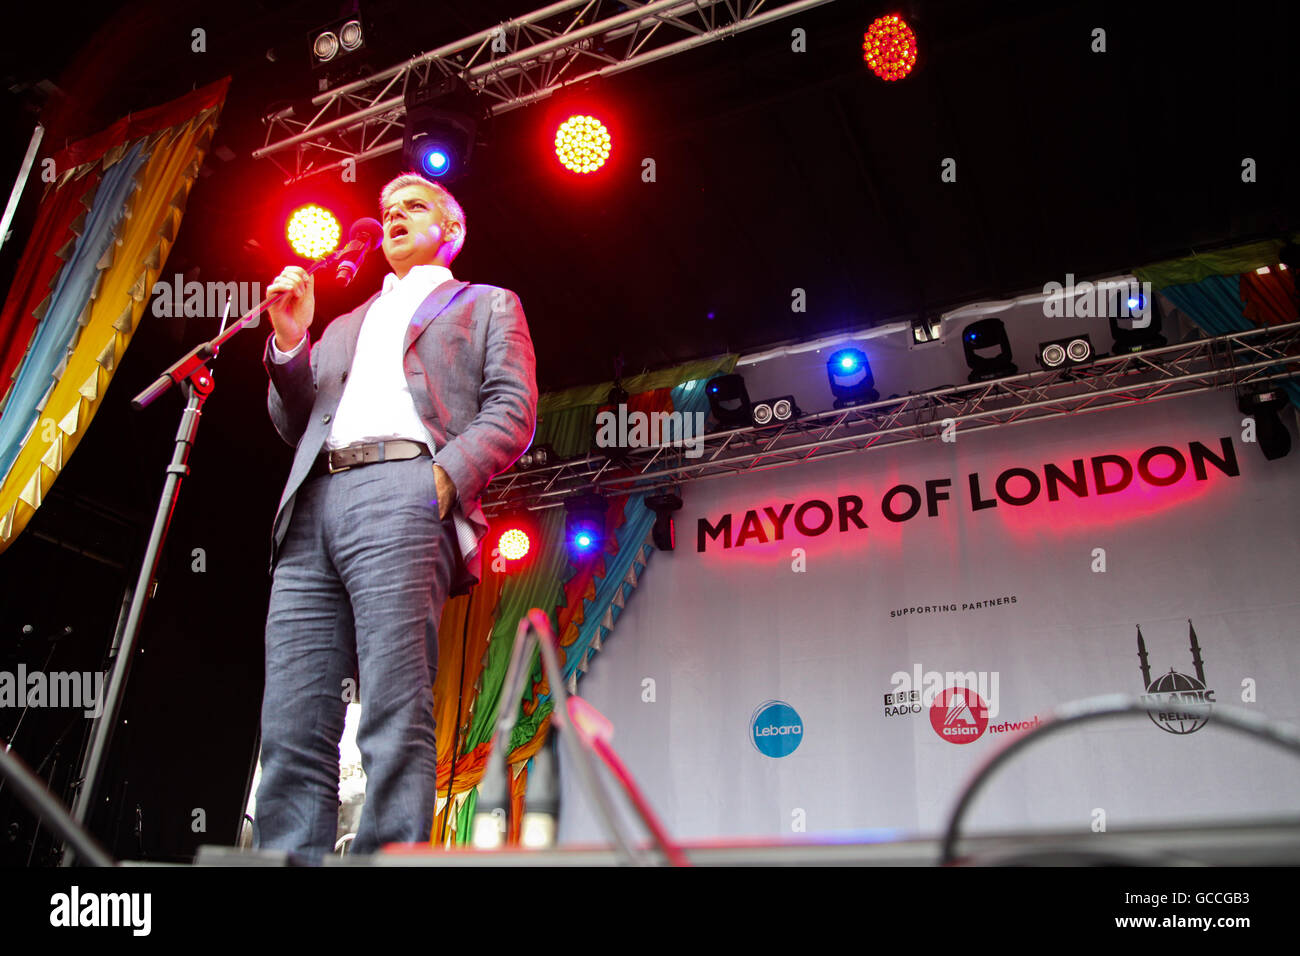 Londres, Reino Unido. El 9 de julio, 2016. El alcalde de Londres, Sadiq Khan, direcciones a grandes multitudes durante Eid celebraciones en Trafalgar Square. Sadiq Khan es el primer alcalde musulmán de Londres. Crédito: Dinendra Haria/Alamy Live News Foto de stock